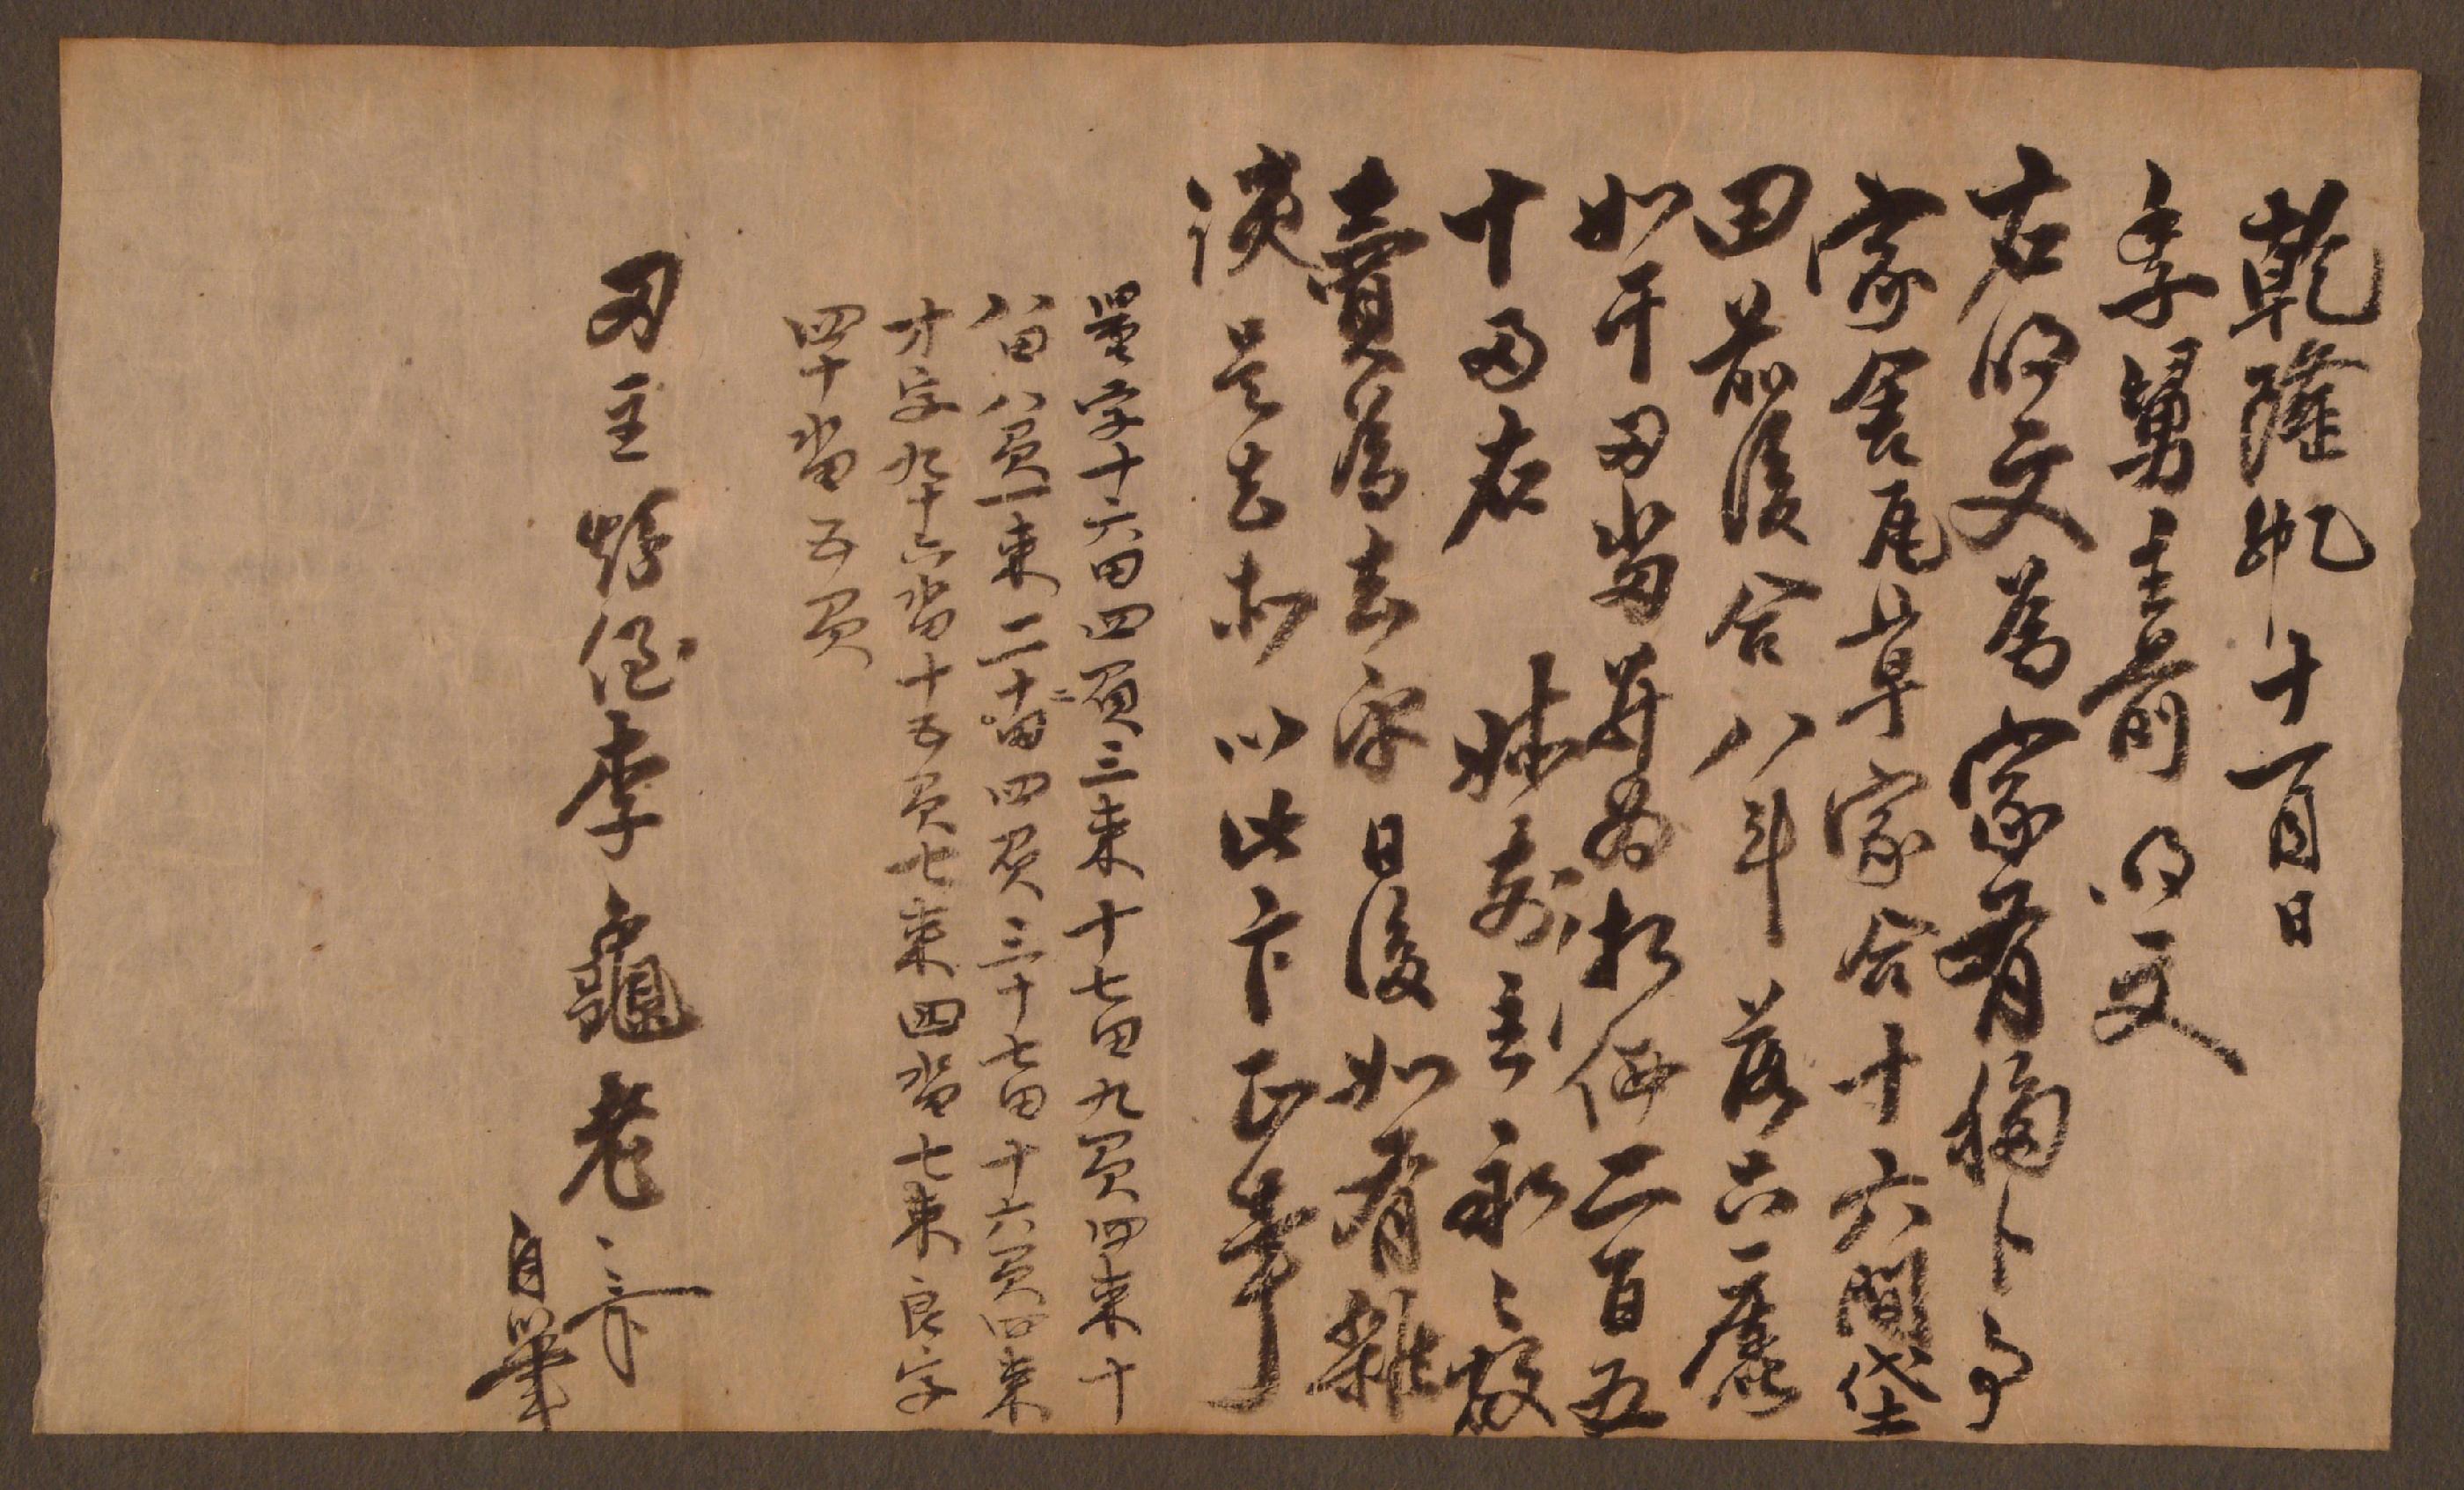 이구로(李龜老)가 1795년에 작성한 가사(家舍)․대전(垈田) 방매문기